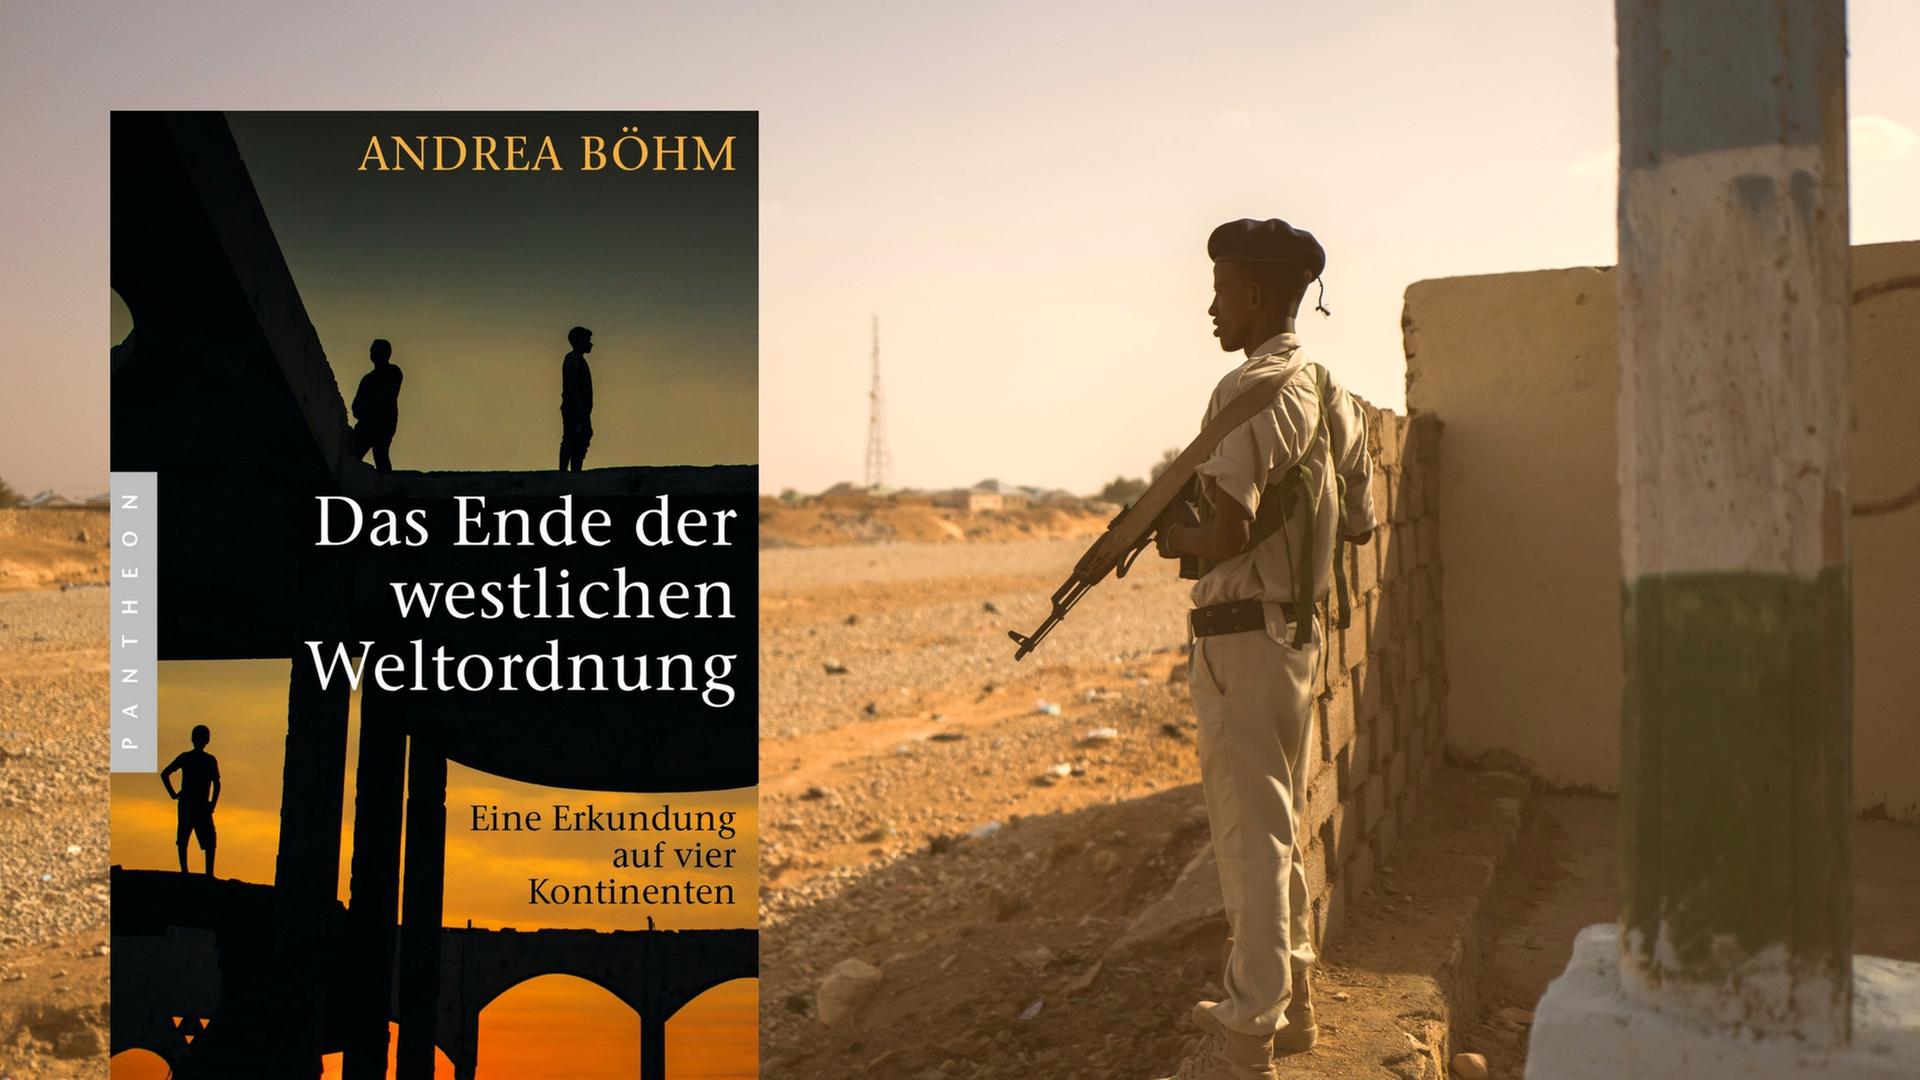 Cover von "Das Ende der westlichen Weltordnung", ein Sicherheitsbeamter am Ufer des ausgetrockneten Garowe-River in Somalia.